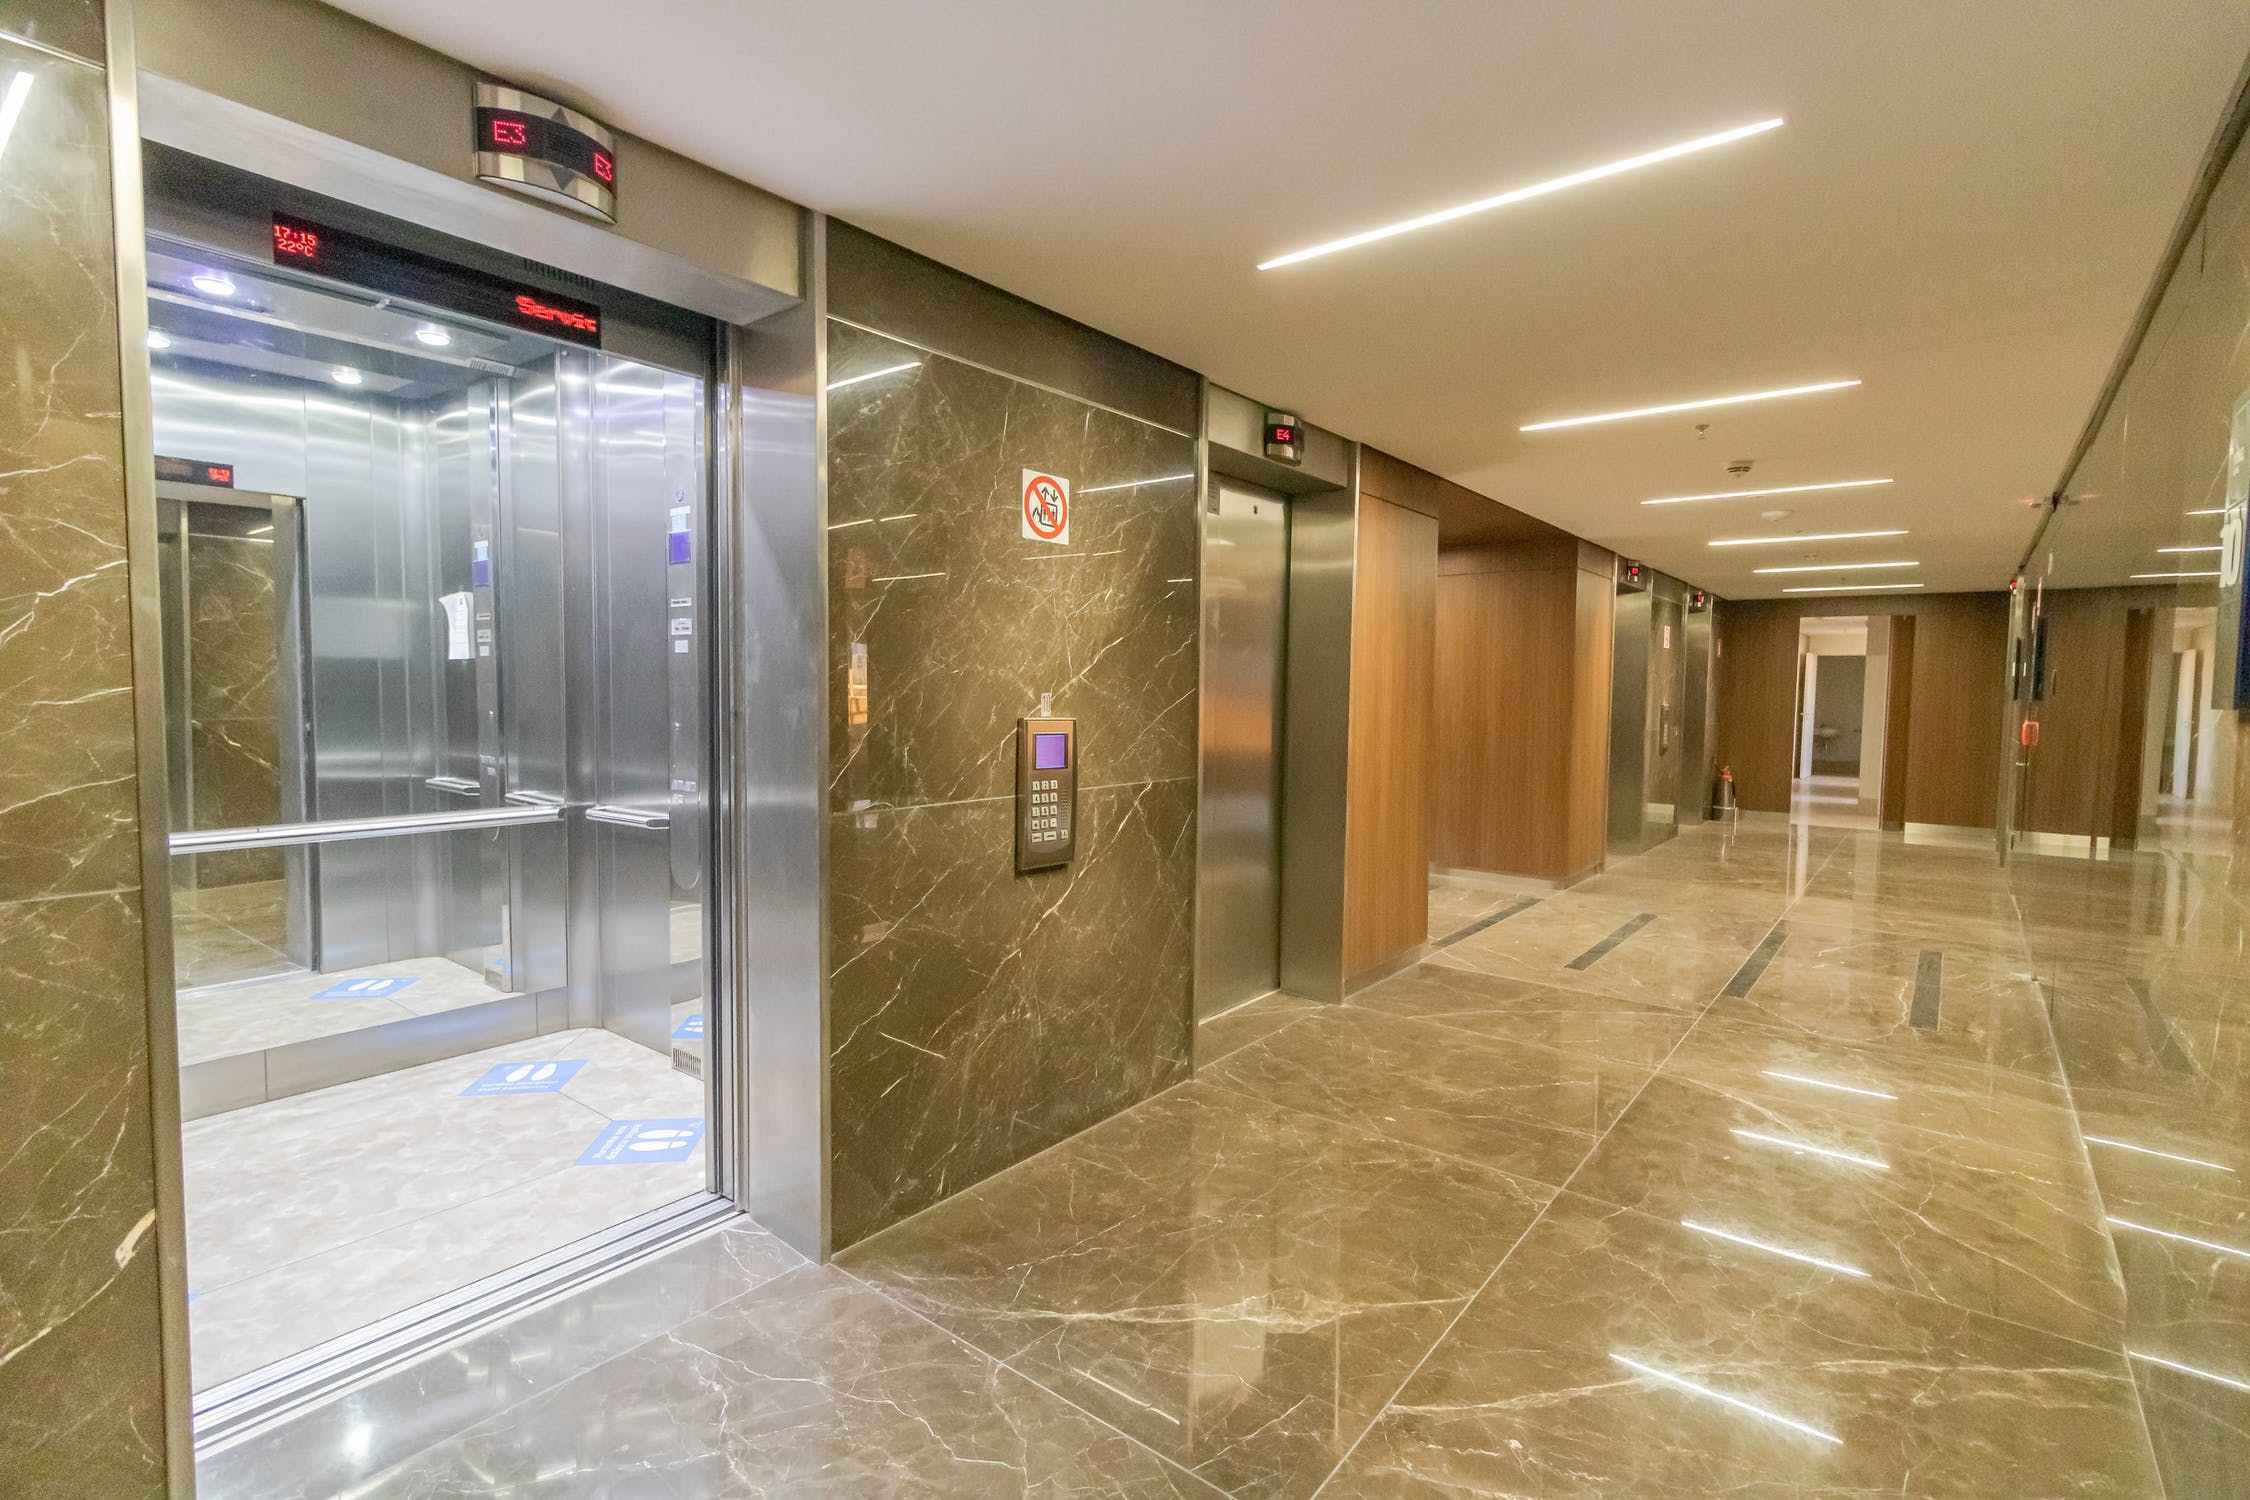 越秀区旧楼加装电梯,广州专业电梯公司定制性价比费用方案,方便住户